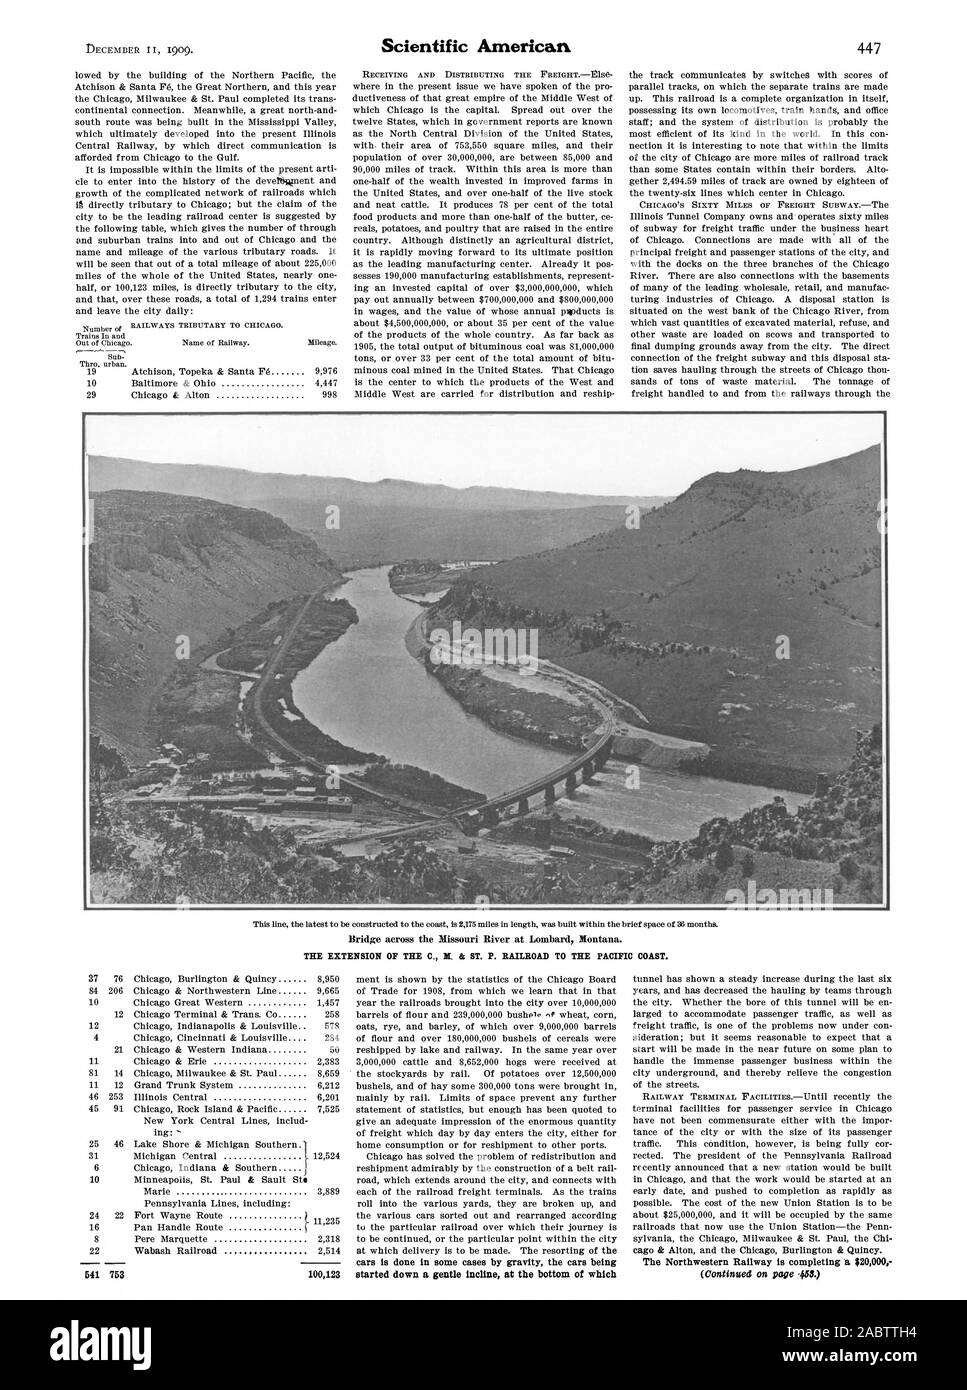 Pont sur la rivière Missouri de Lombard, Montana. L'extension de la C., M. & P. Railroad à la côte du Pacifique. Scientific American, 1909-12-11 Banque D'Images